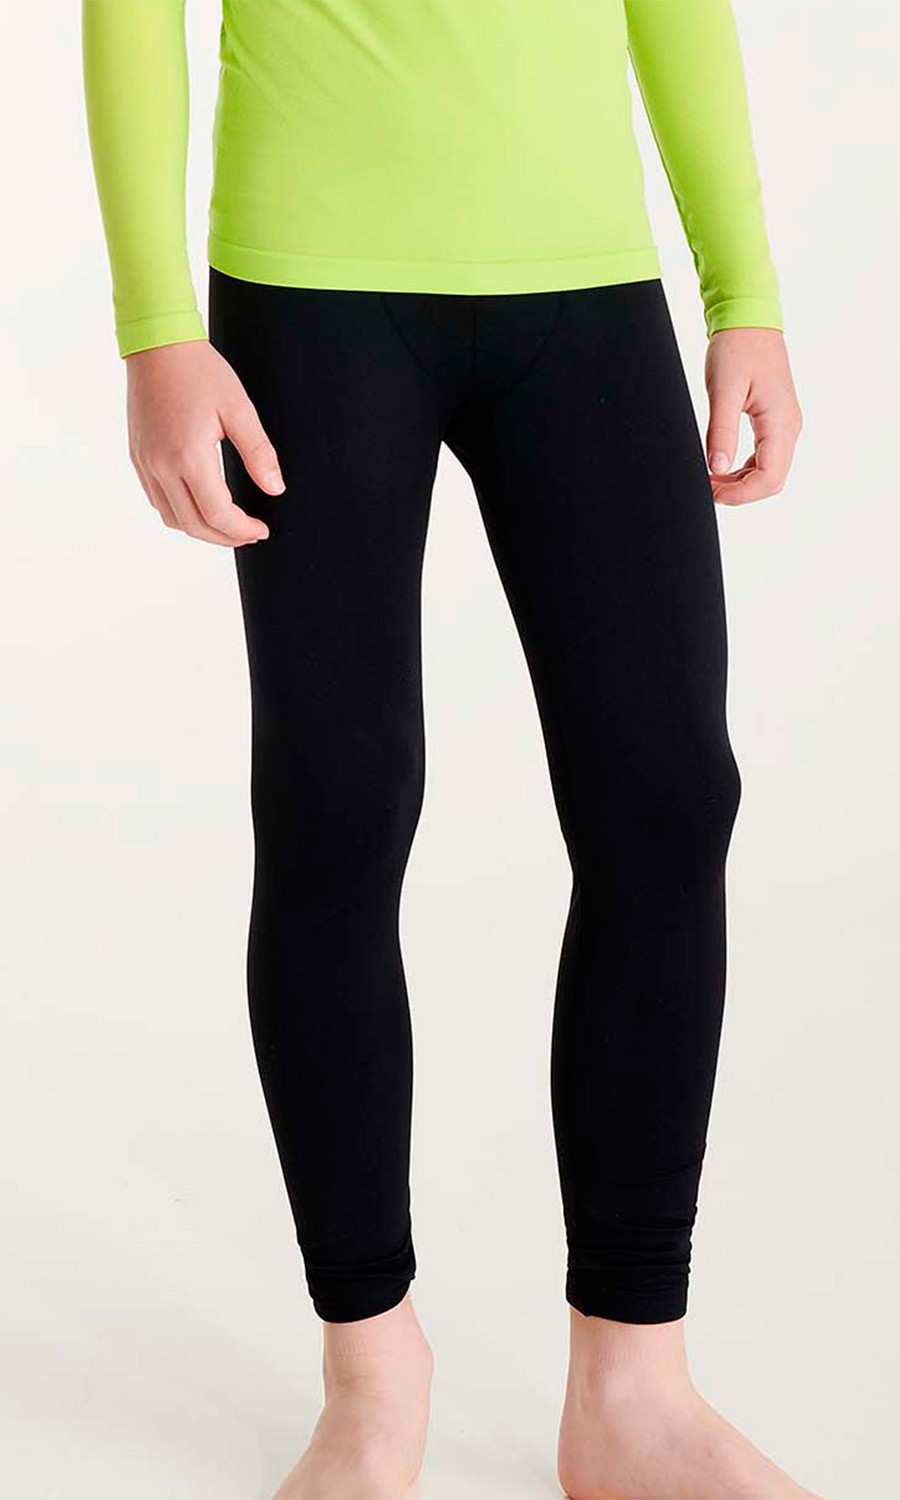 Pantalón Térmico máximo confort. 92% Poliamida / 8% Elastano, 240 g/m². -  euroUniforms